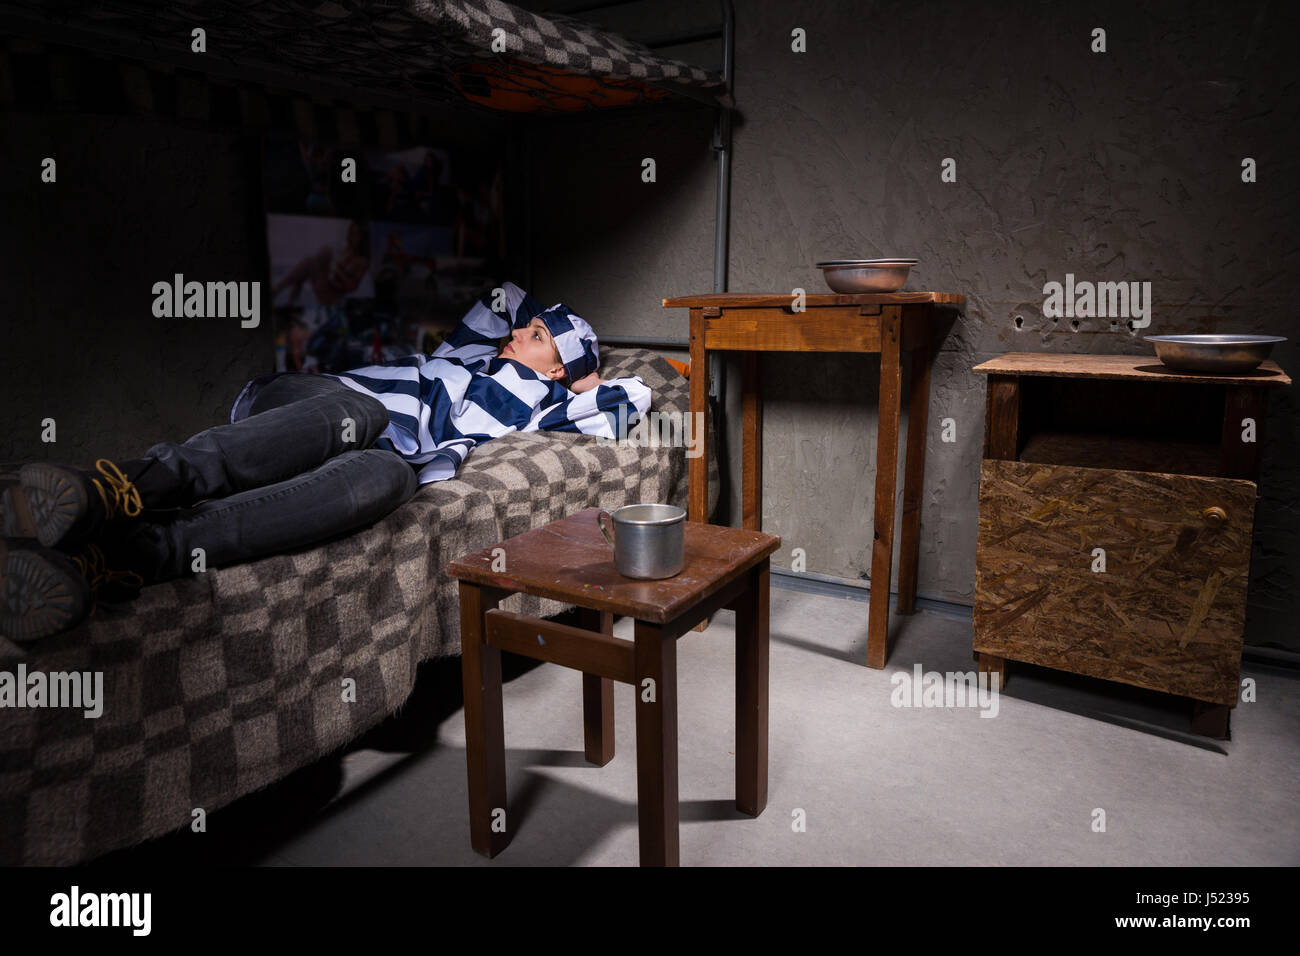 Junge Frau gefangen in Gefängnis Uniform hat in Gedanken beim liegen im  Bett in der Nähe von Nachttisch mit Aluminium-Gerichten in einer  Gefängniszelle verloren Stockfotografie - Alamy